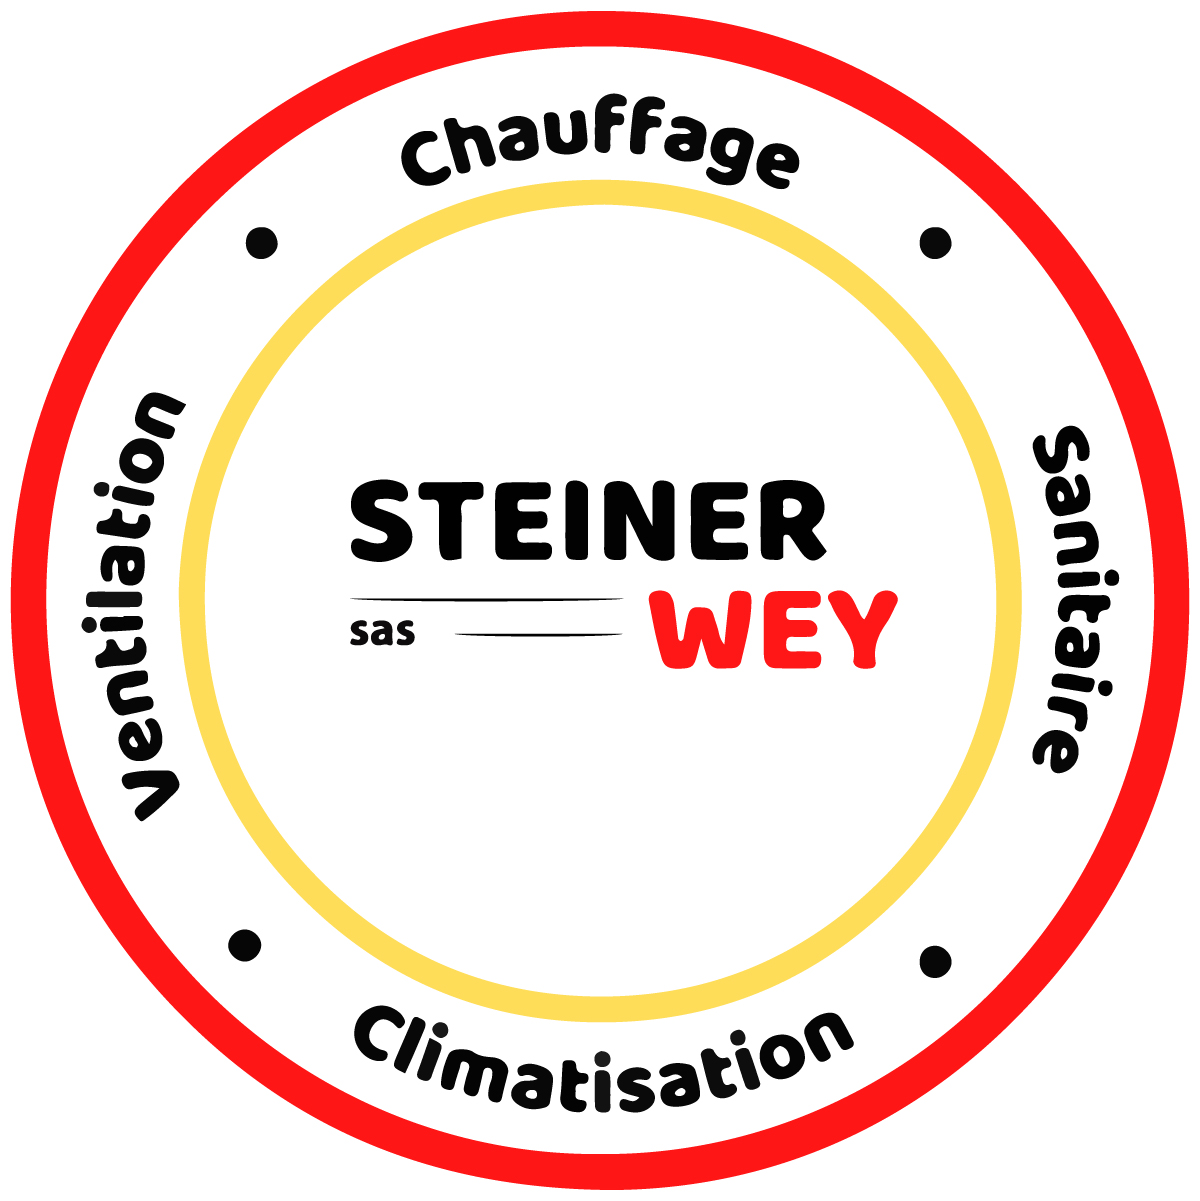 (c) Chauffage-steiner-wey.fr